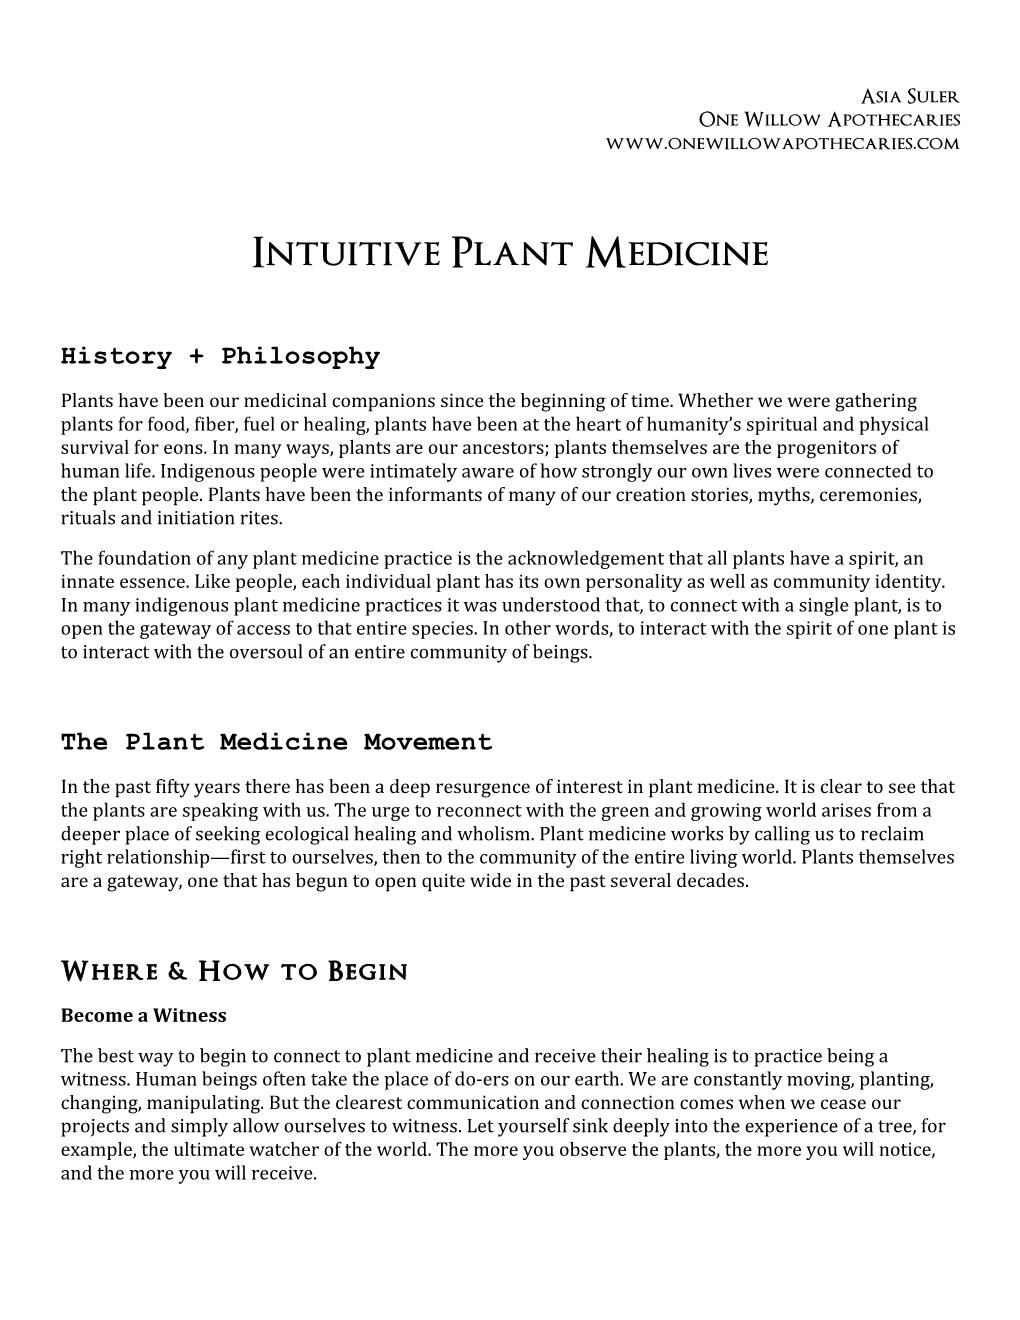 Intuitive Plant Medicine